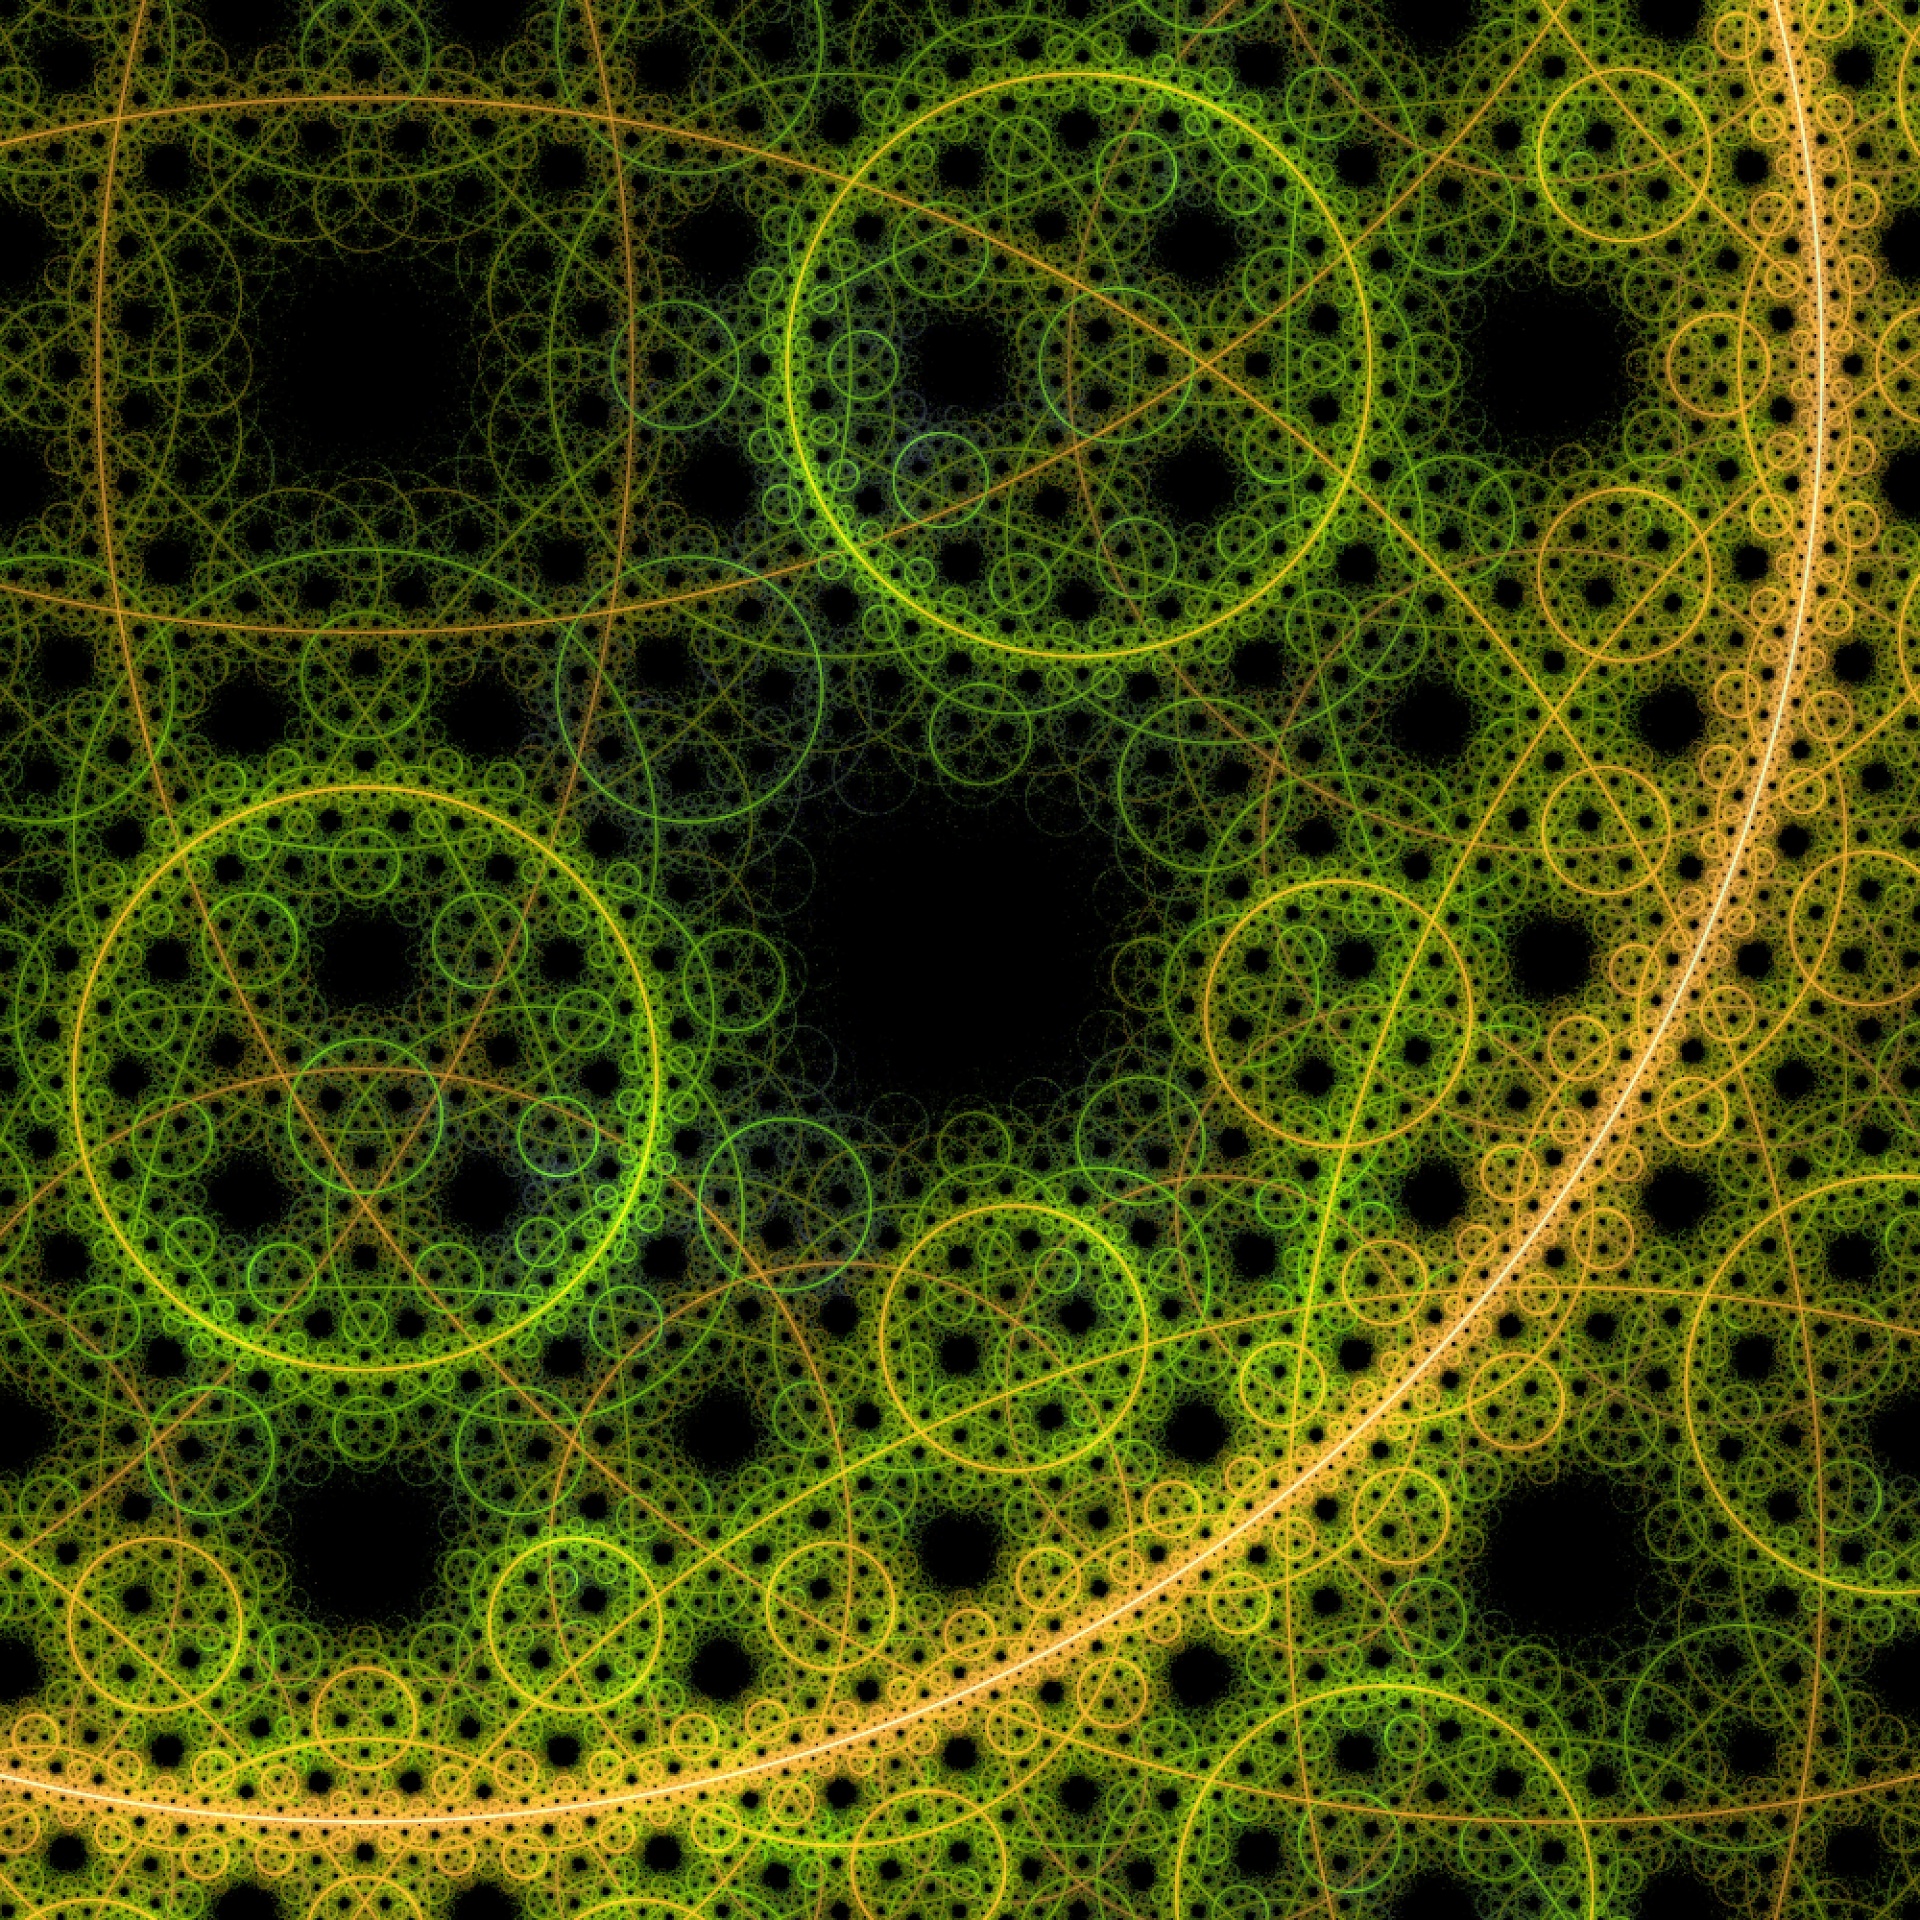 Abstract Circles